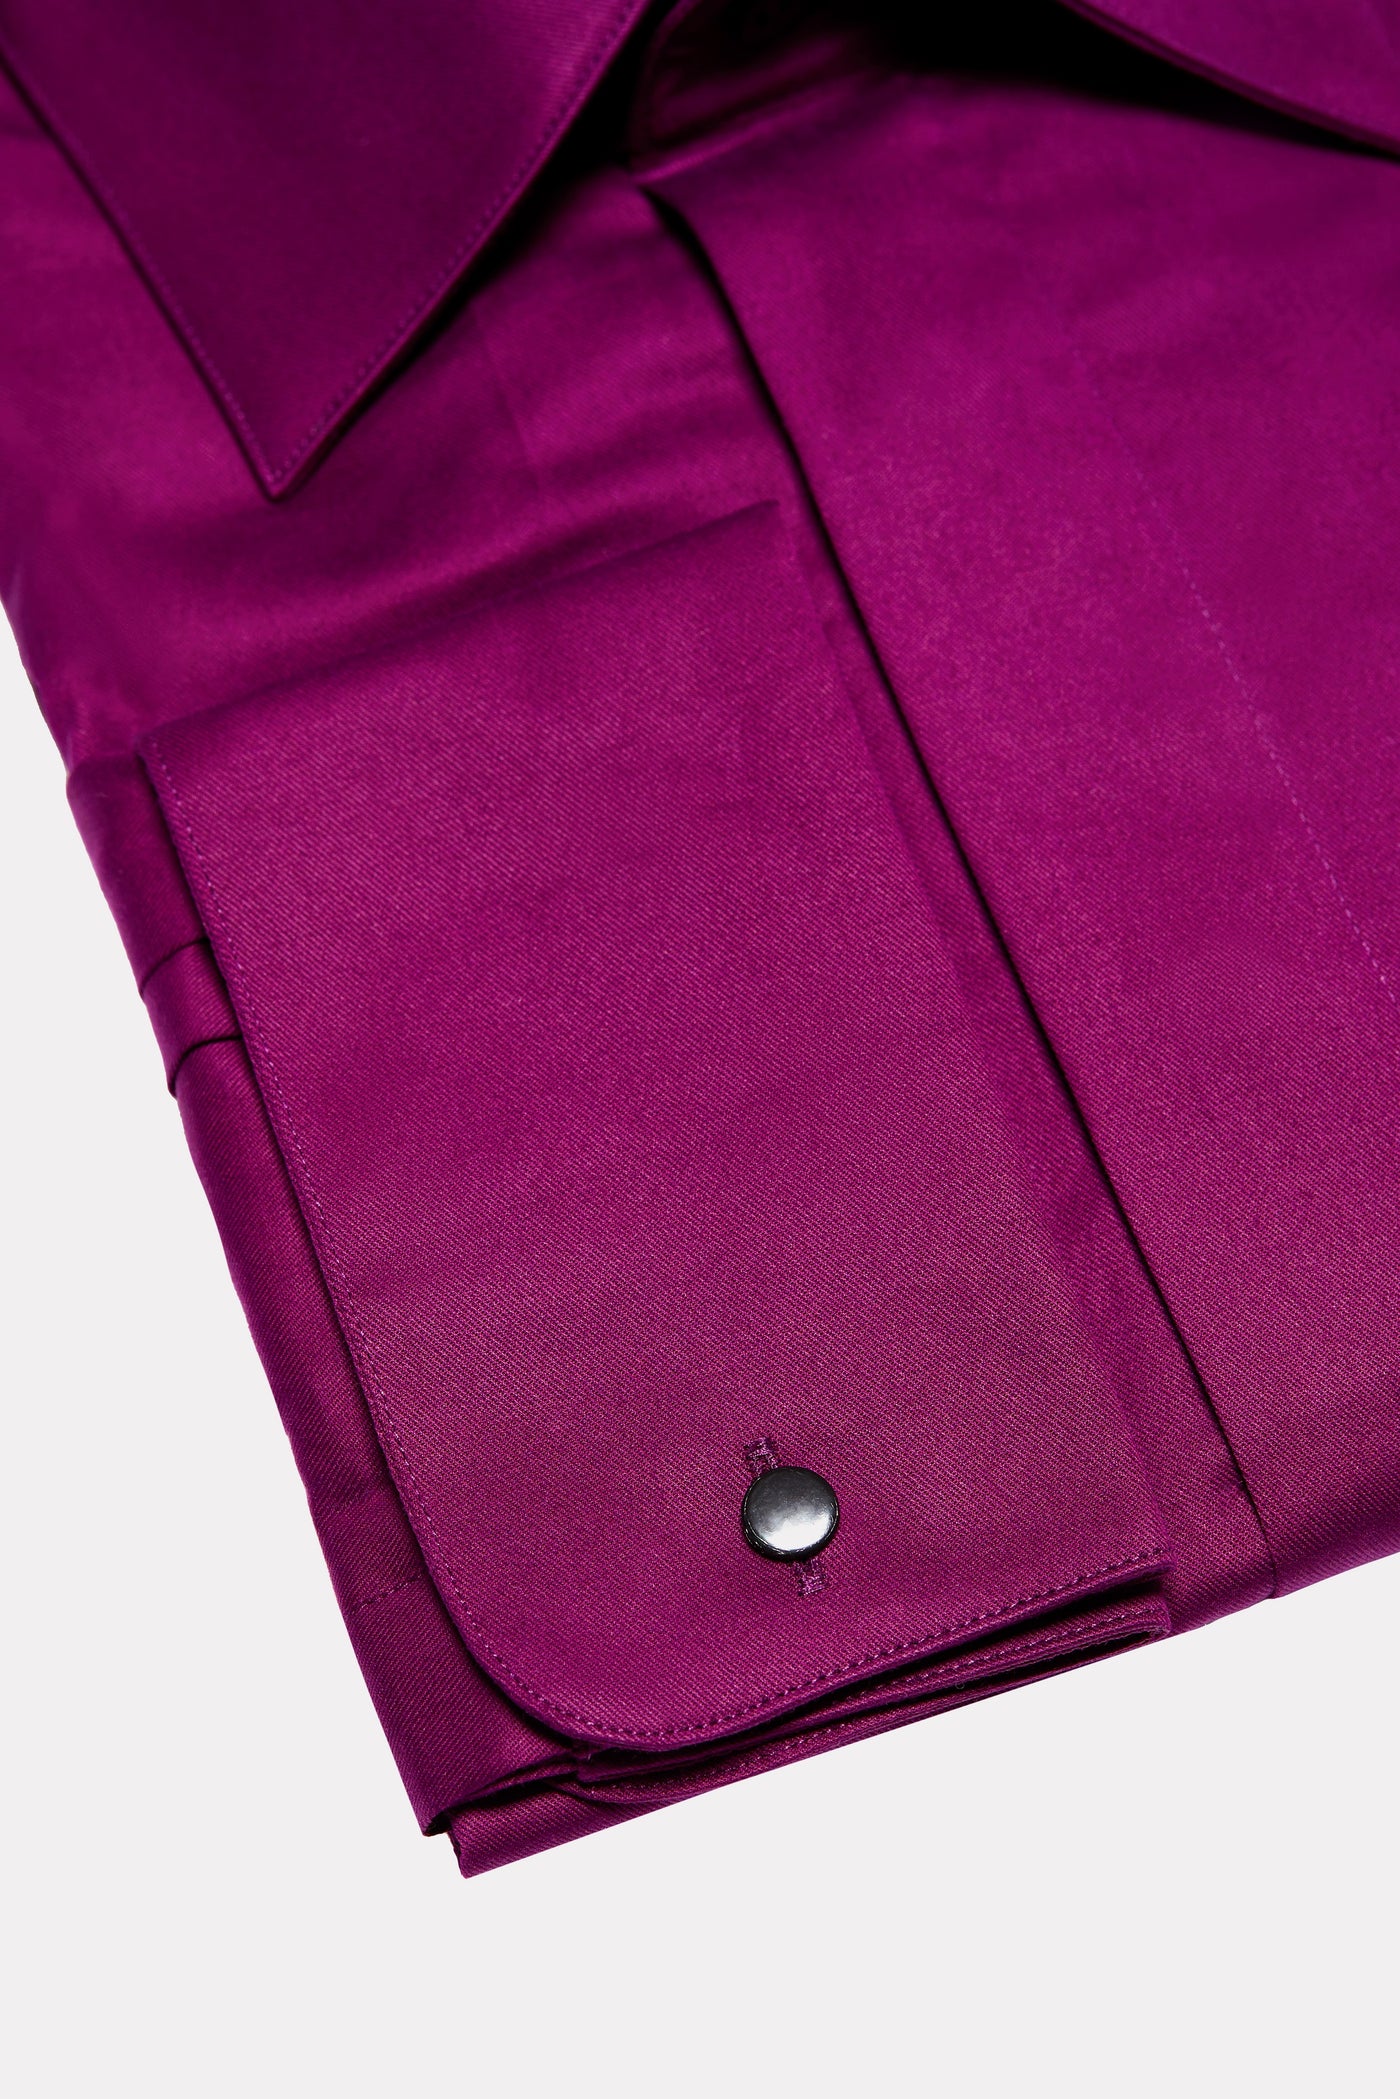 Camasa purple cu nasturi ascunsi